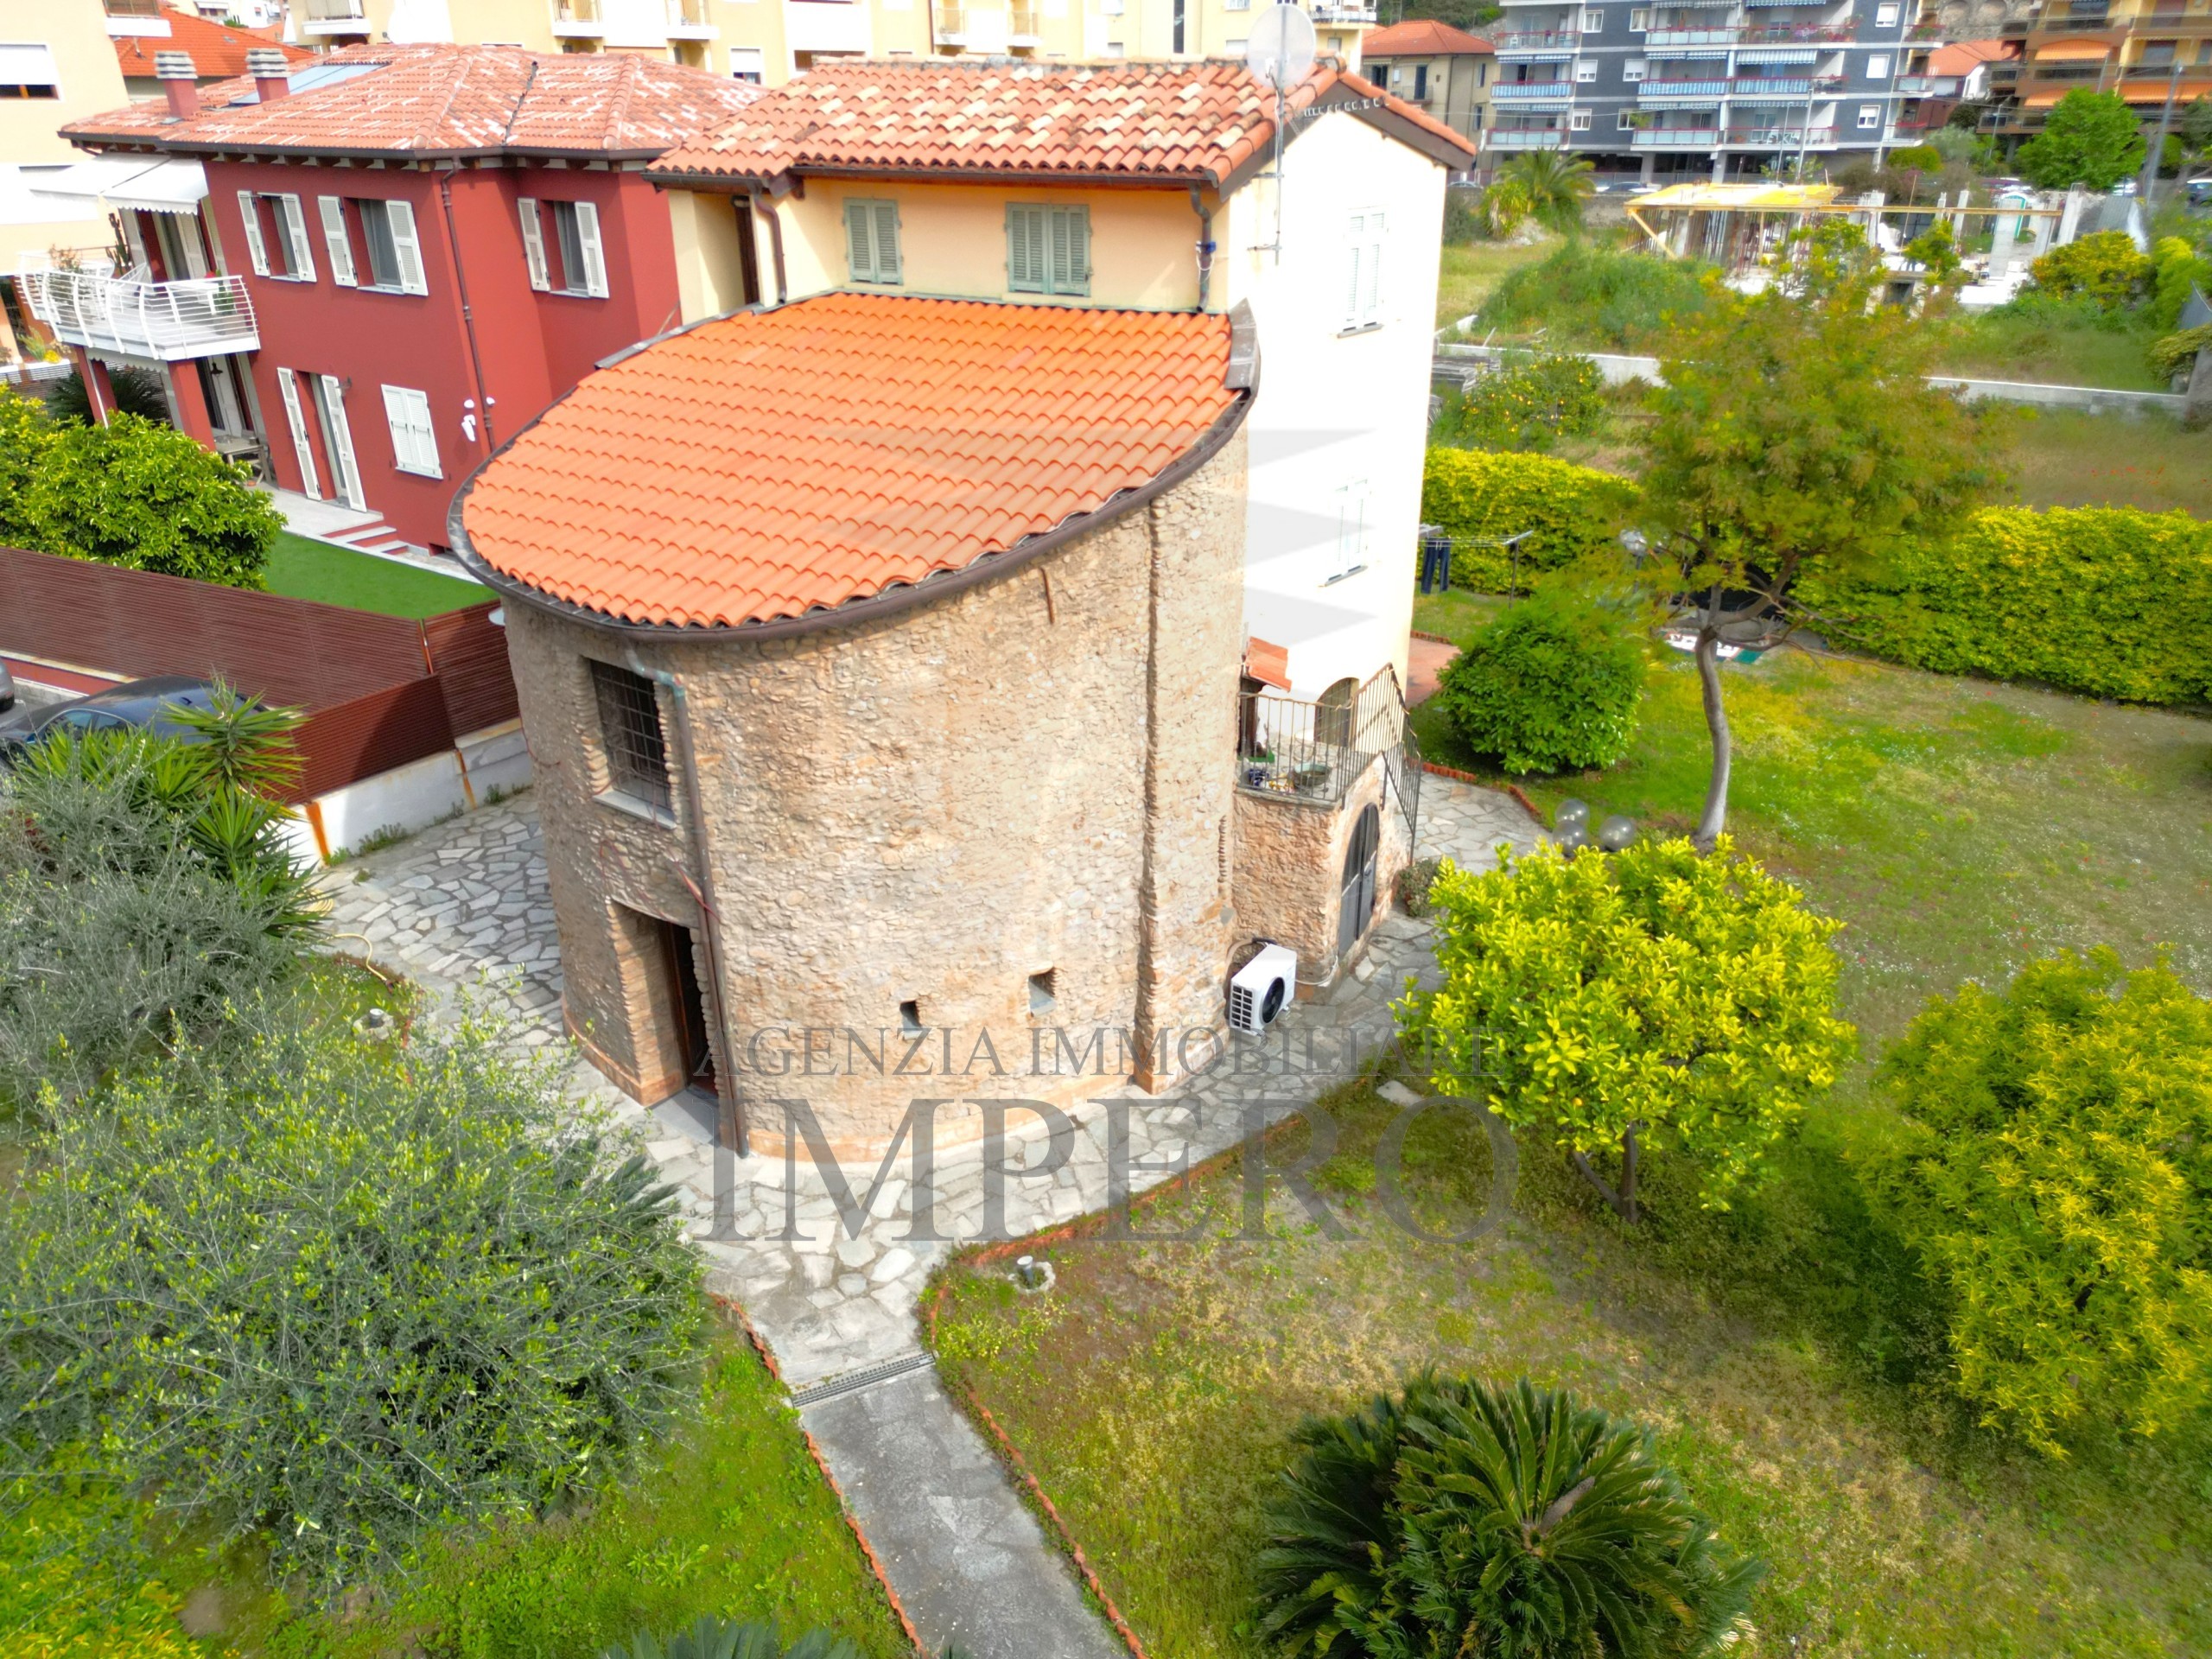 Villa con giardino in via asse, Ventimiglia